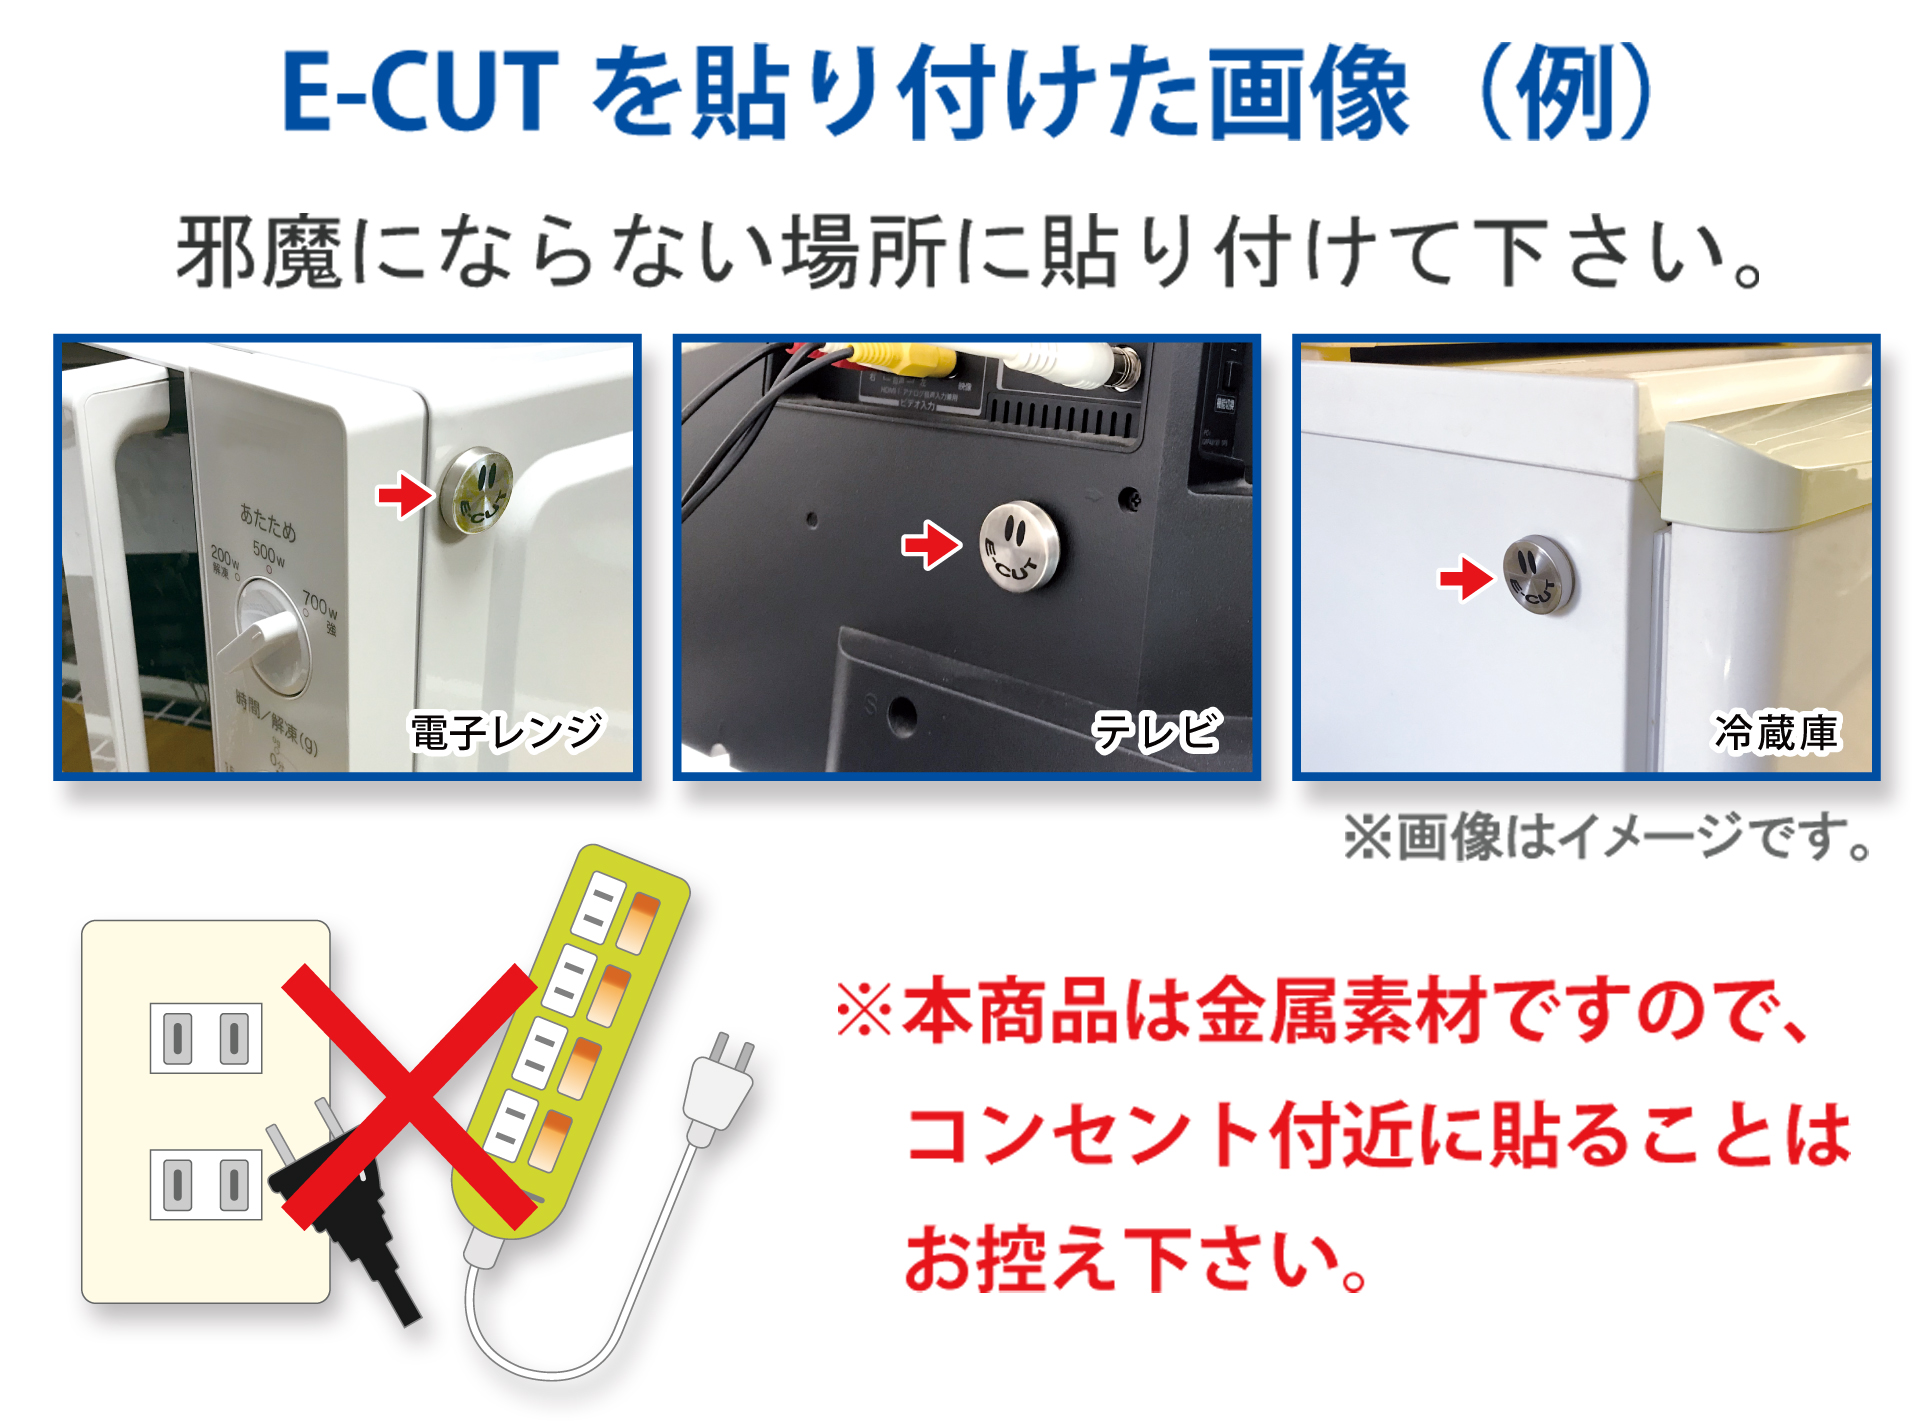 E-CUTを貼り付けた画像(例)